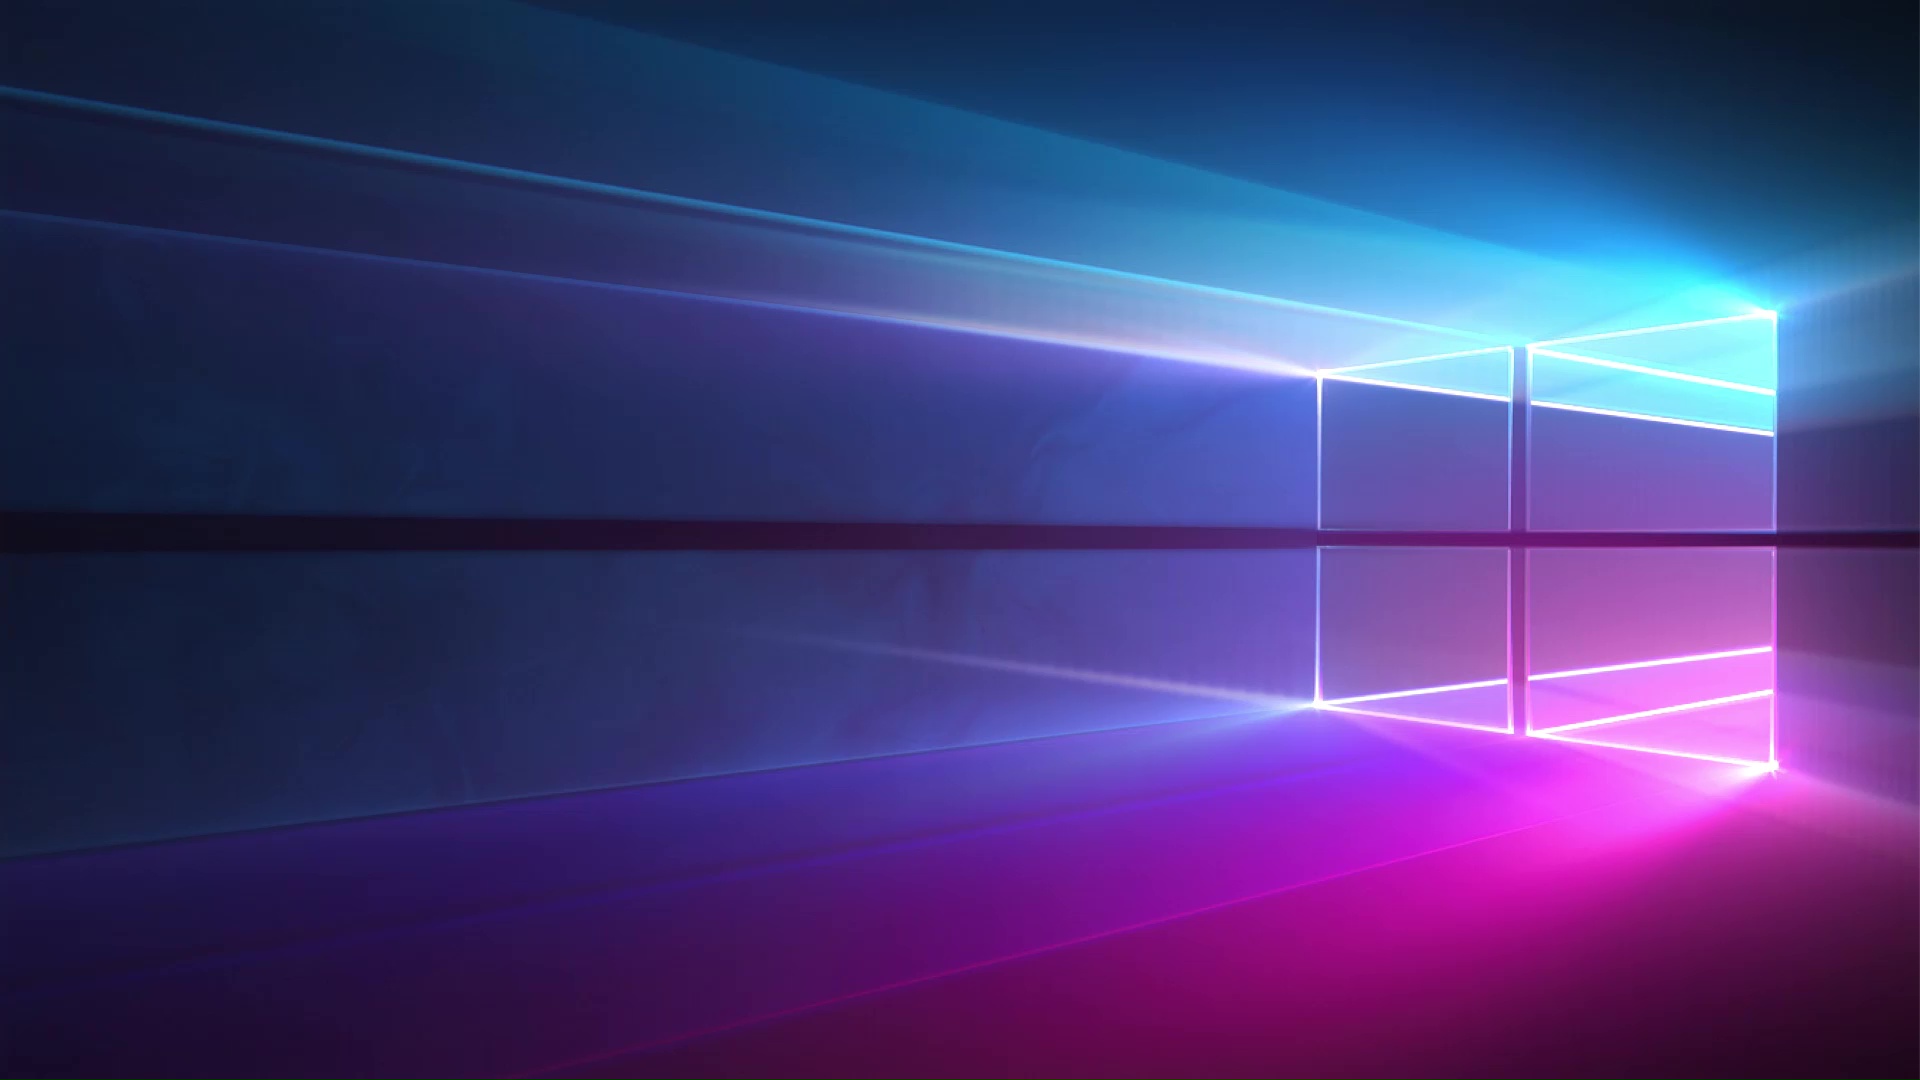 Windows 10 Neon Live Wallpaper - MoeWalls